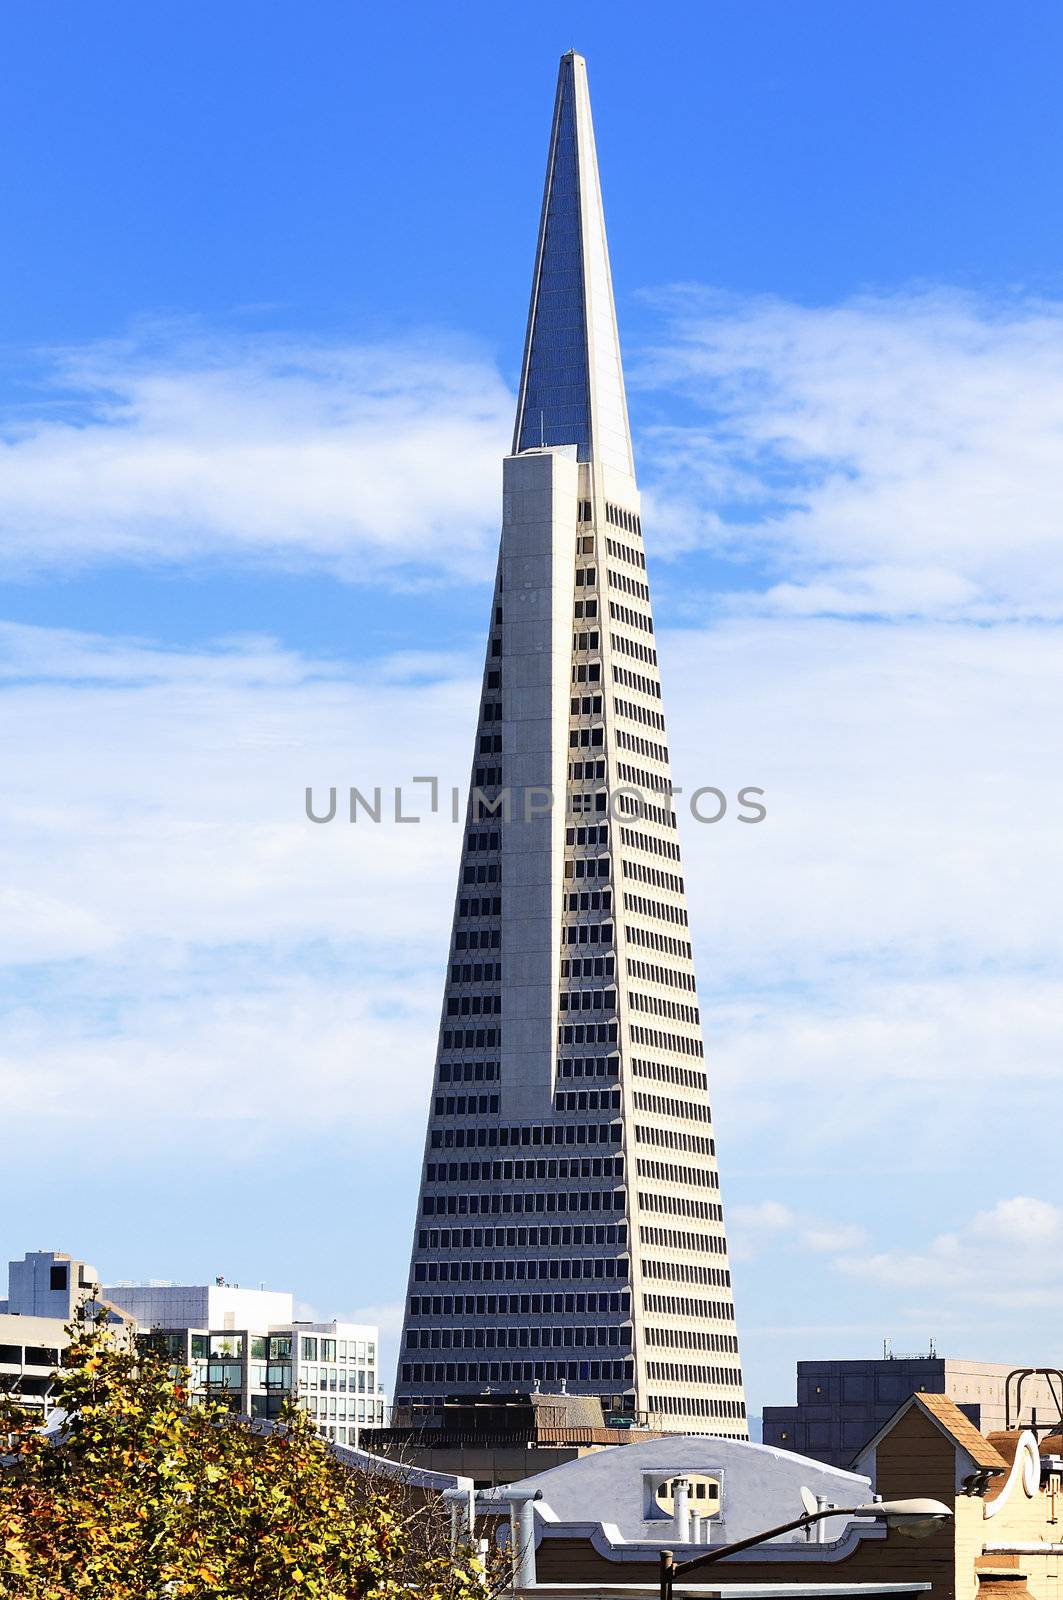 Transamerica building in San Francisco, USA